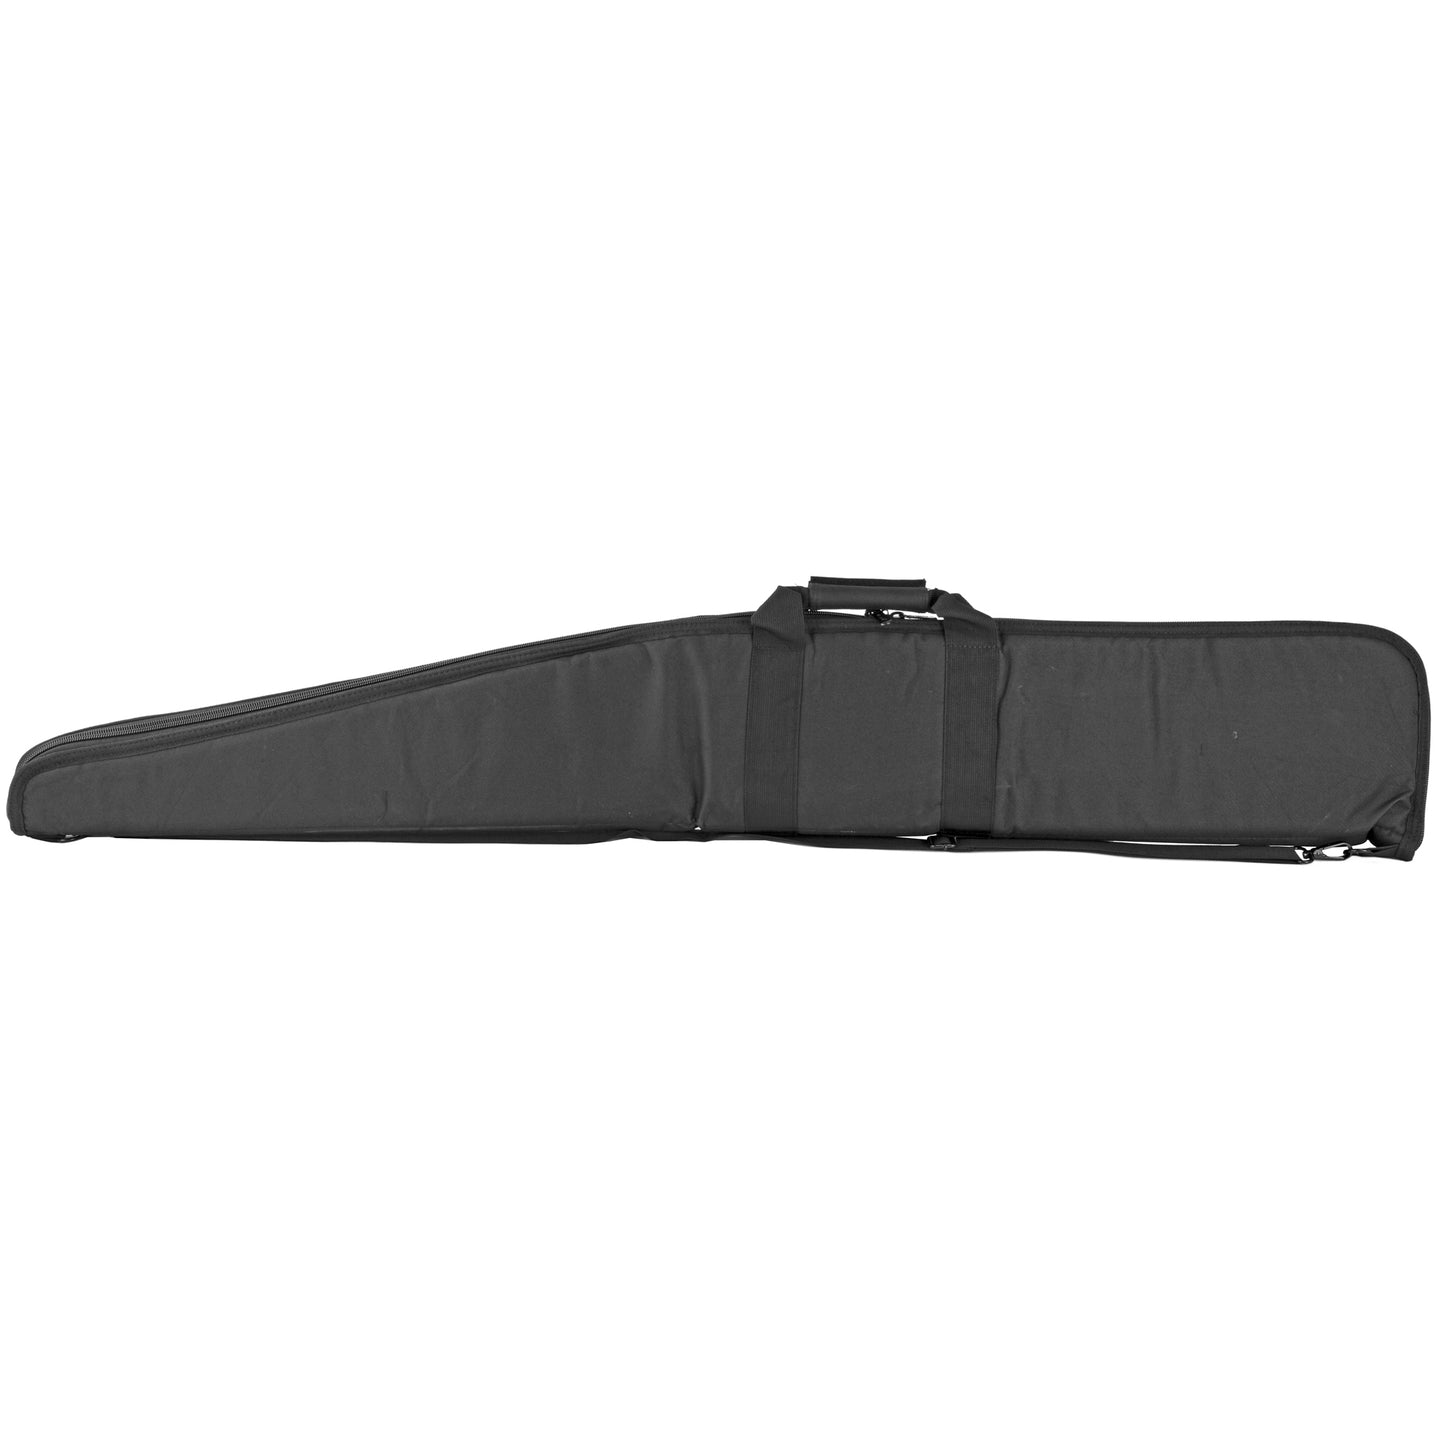 NCSTAR 2958 Series Shotgun Case Black 54" Includes Shoulder Strap CVSHB2958-54